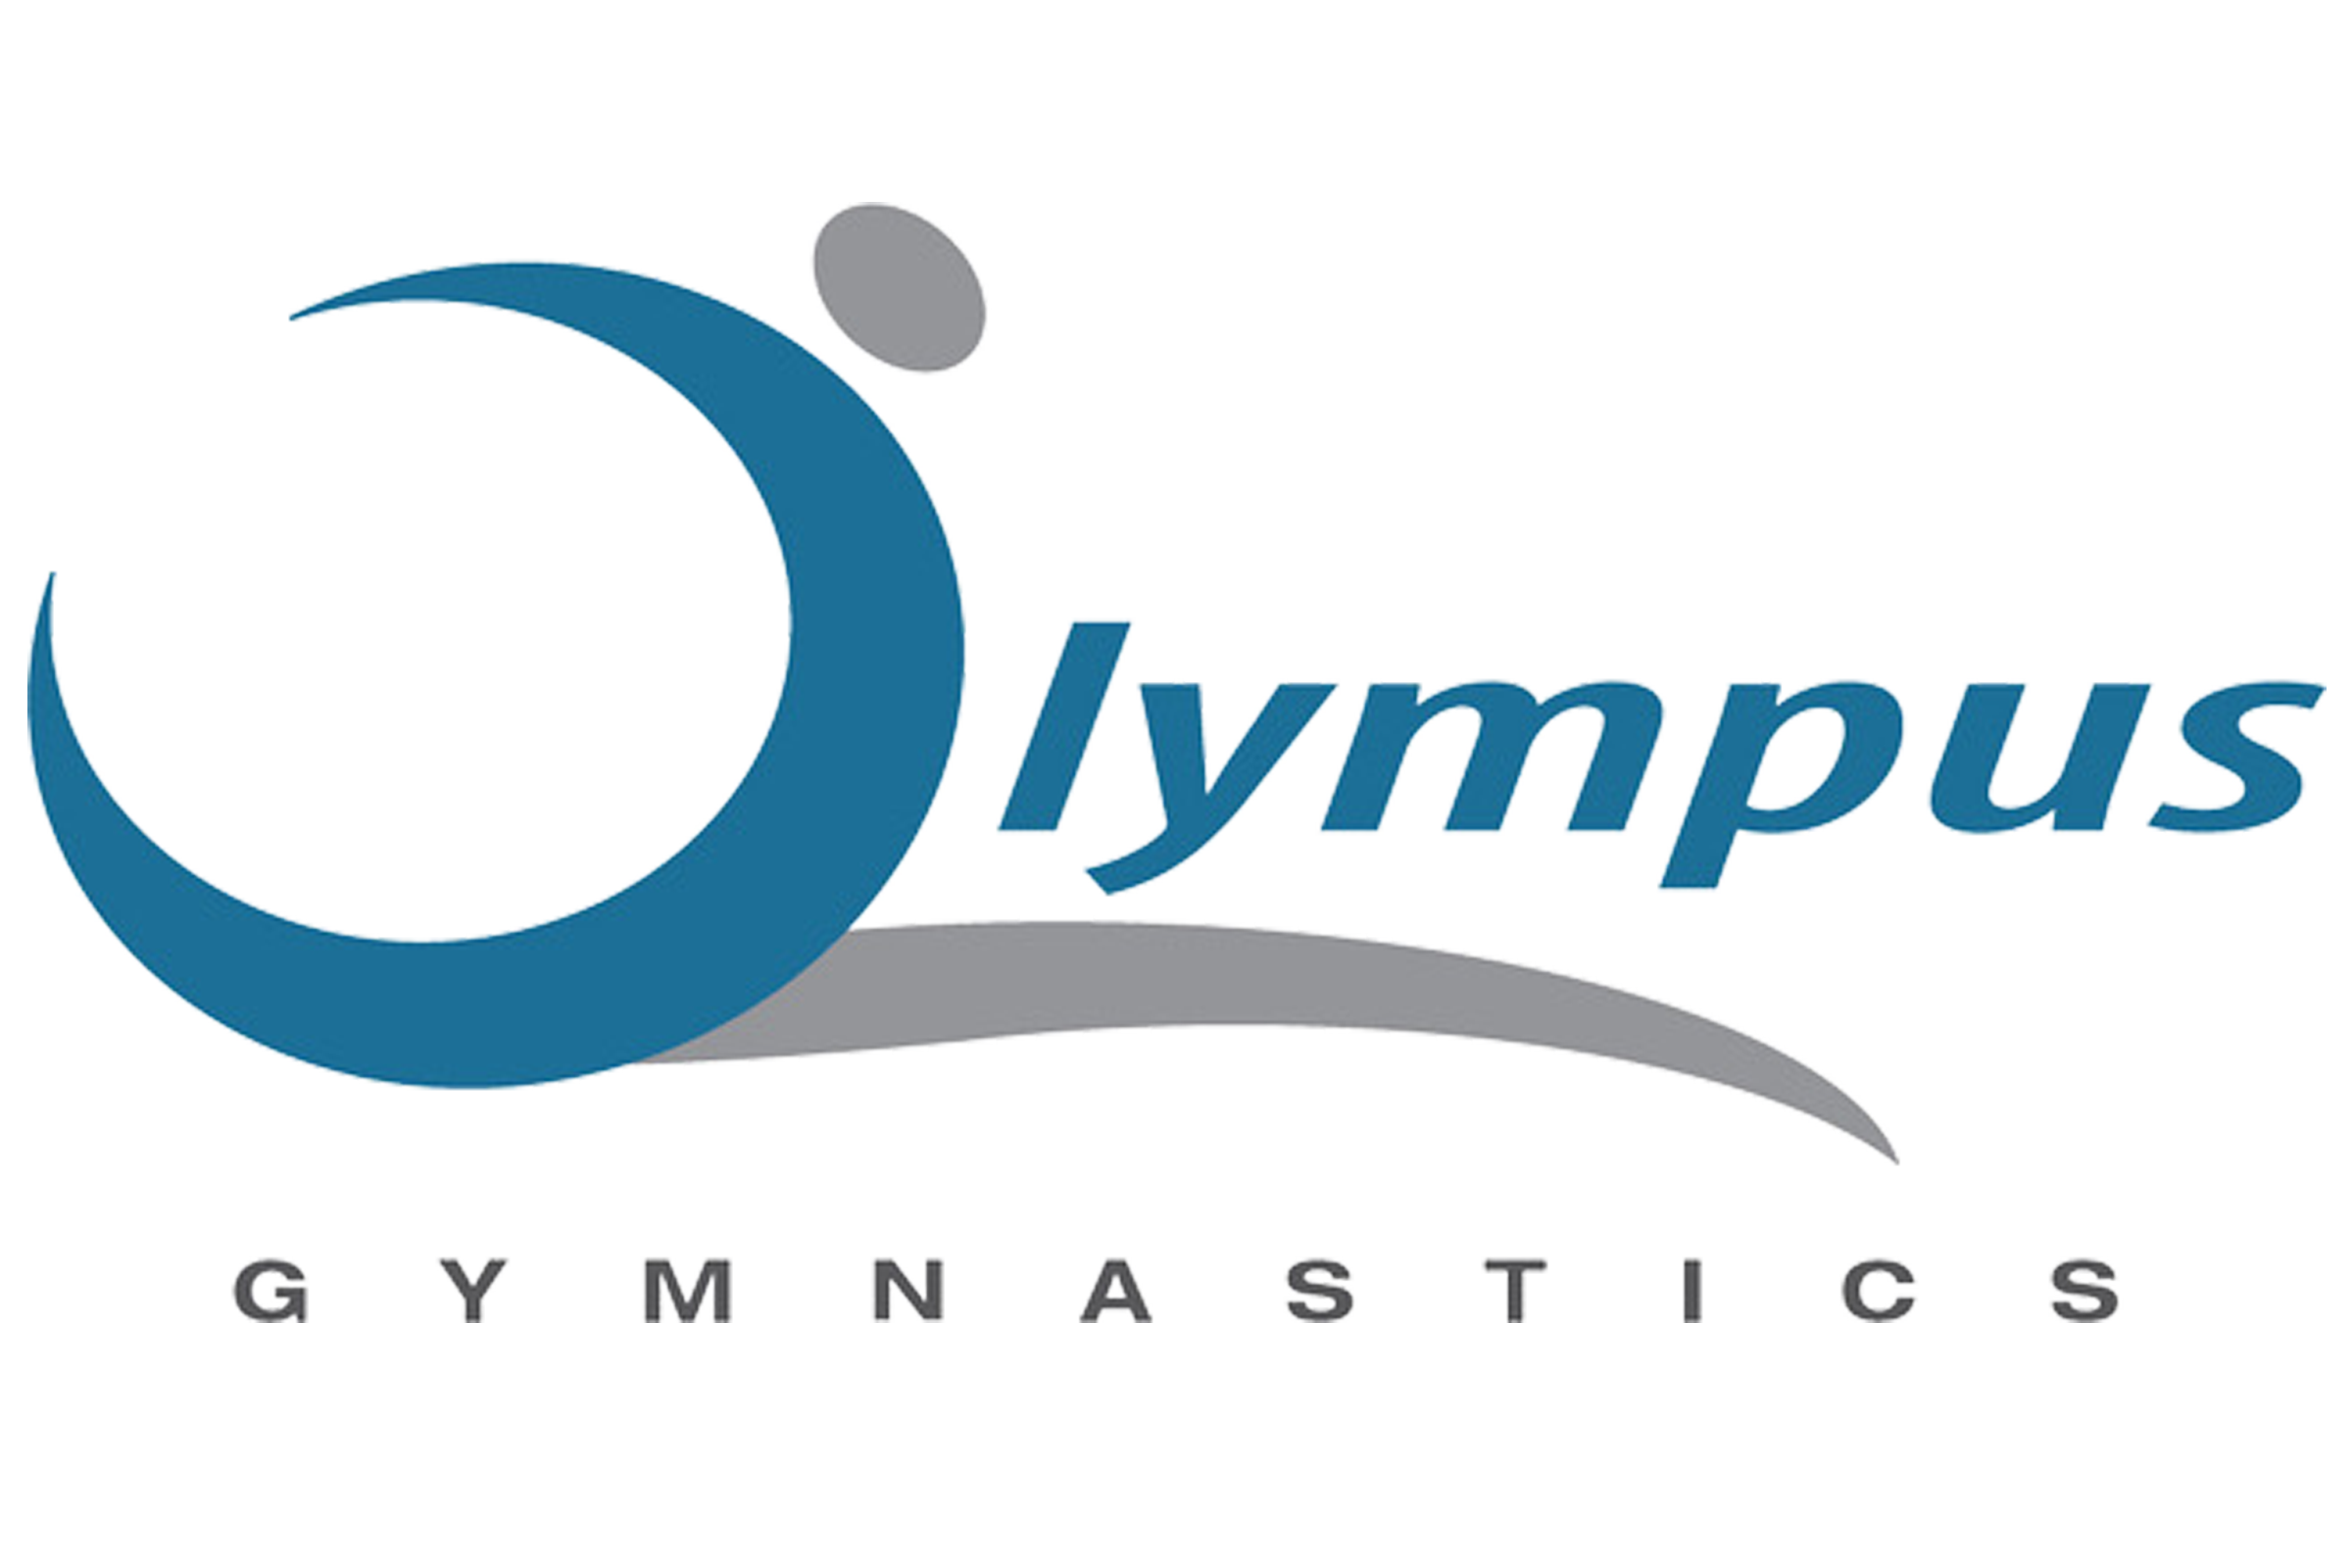 Olympus Gymnastics